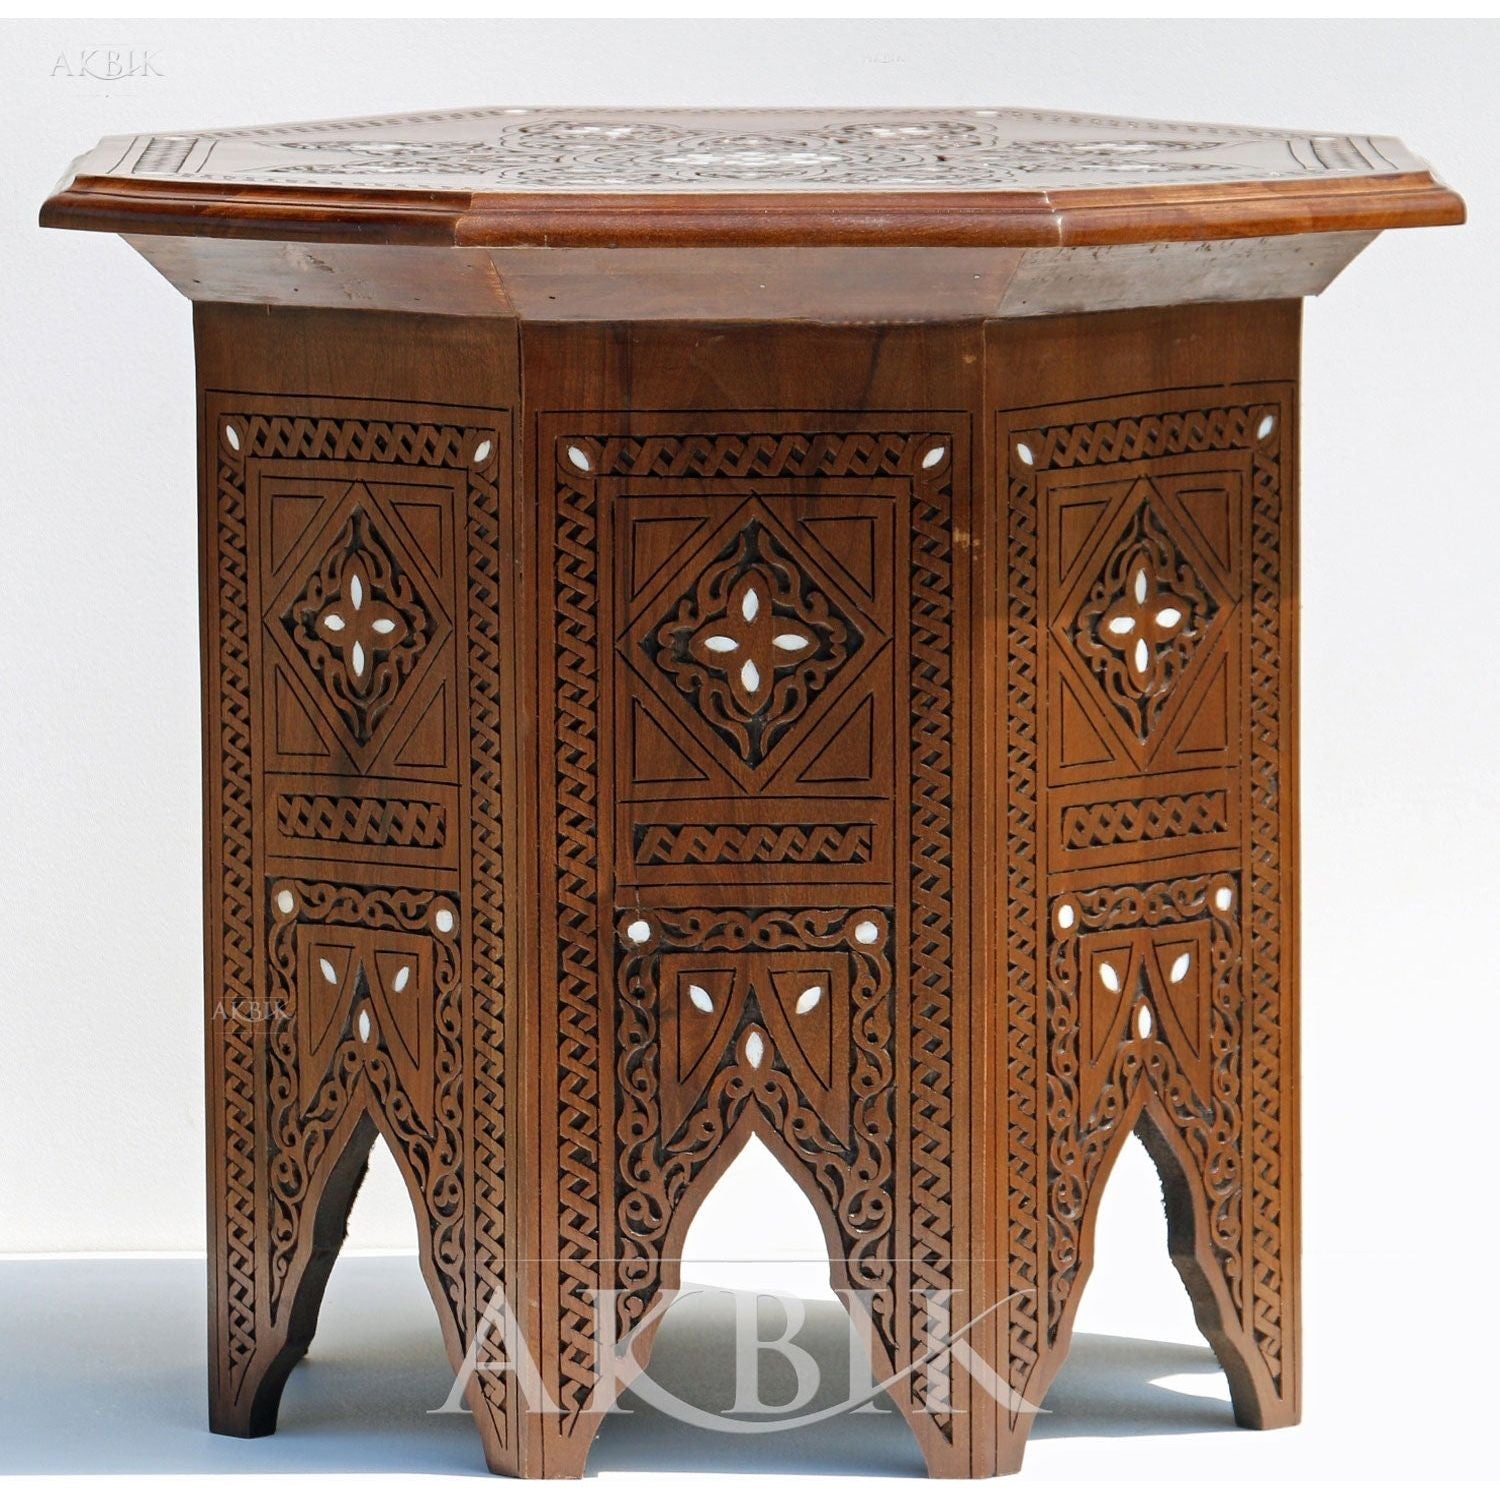 SEVILLE SIDE TABLE - AKBIK Furniture & Design